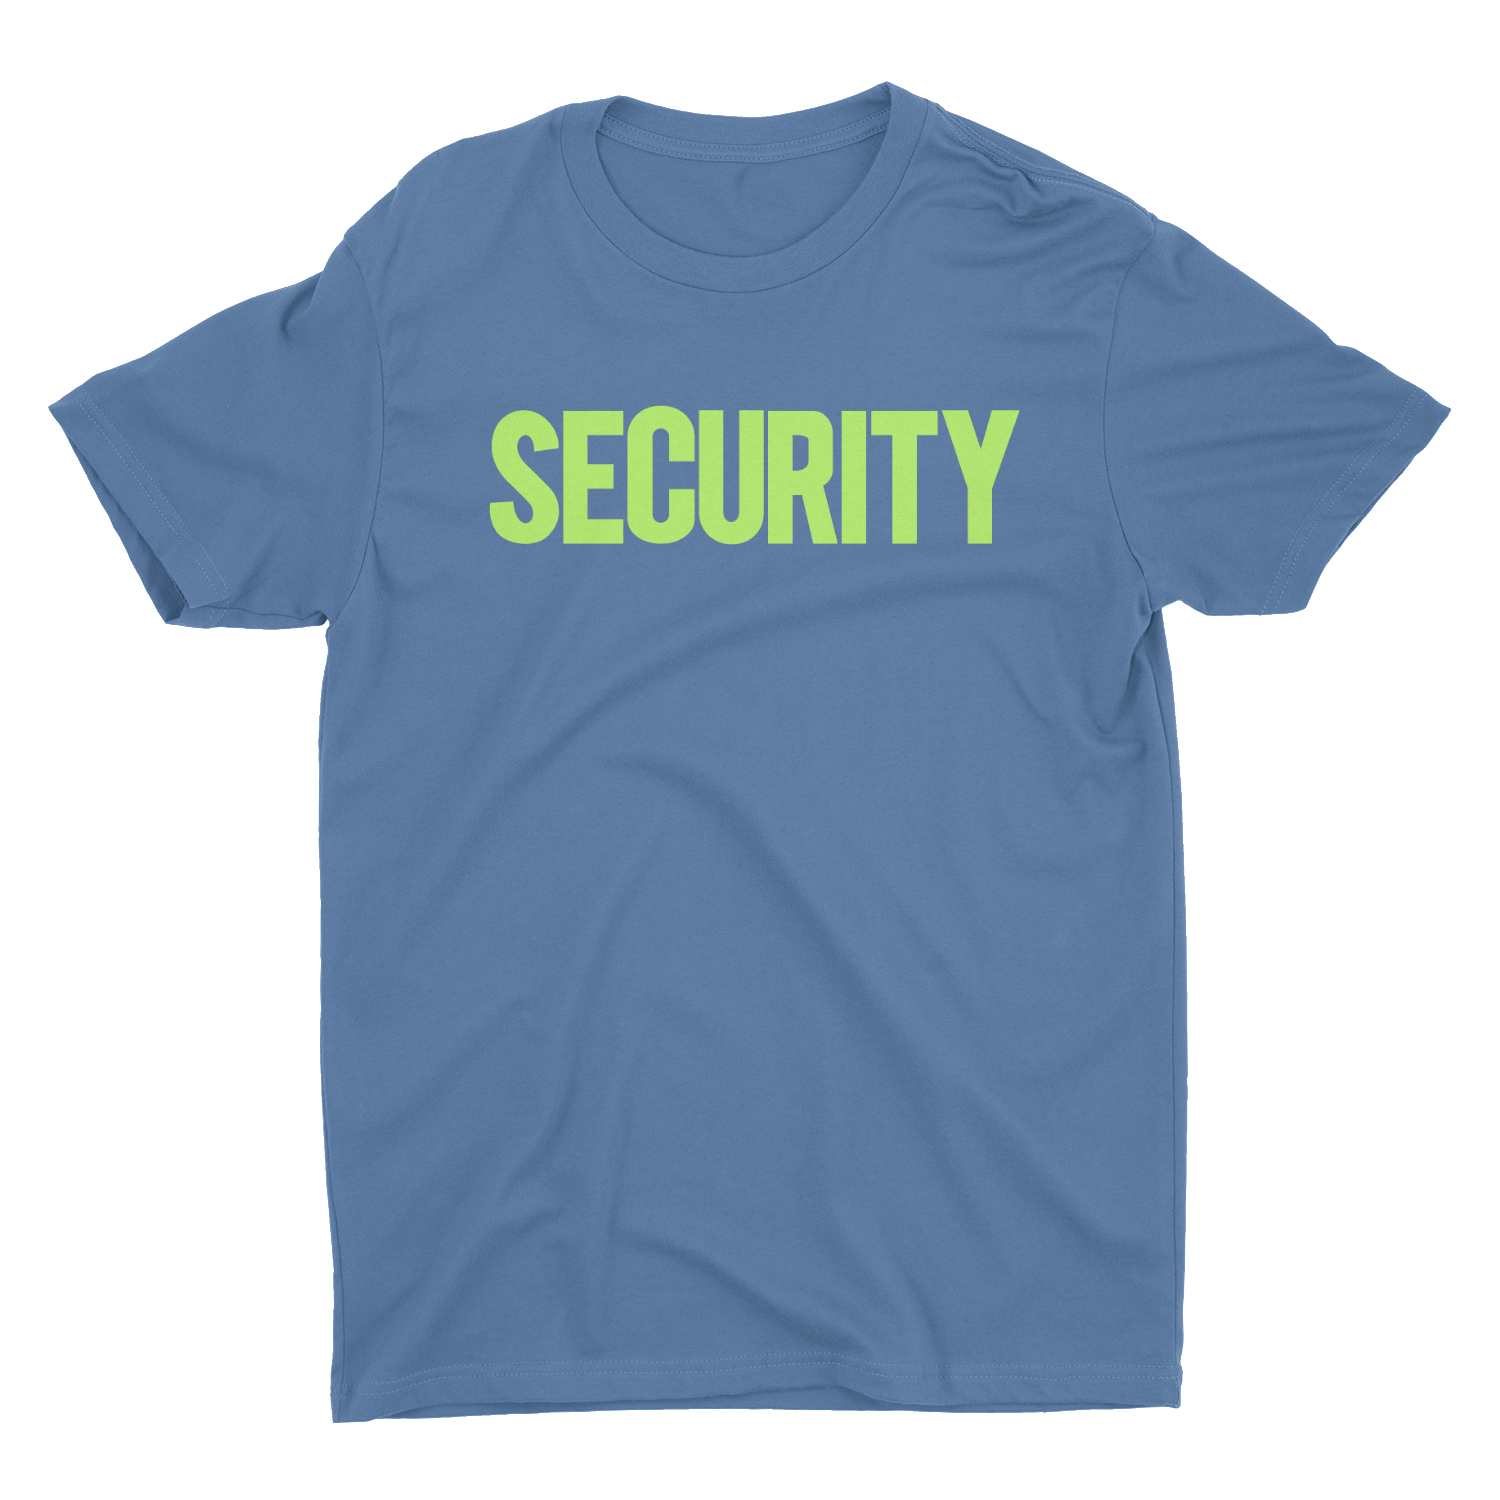 Men's Security Tee Indigo Blue Now In Stock!